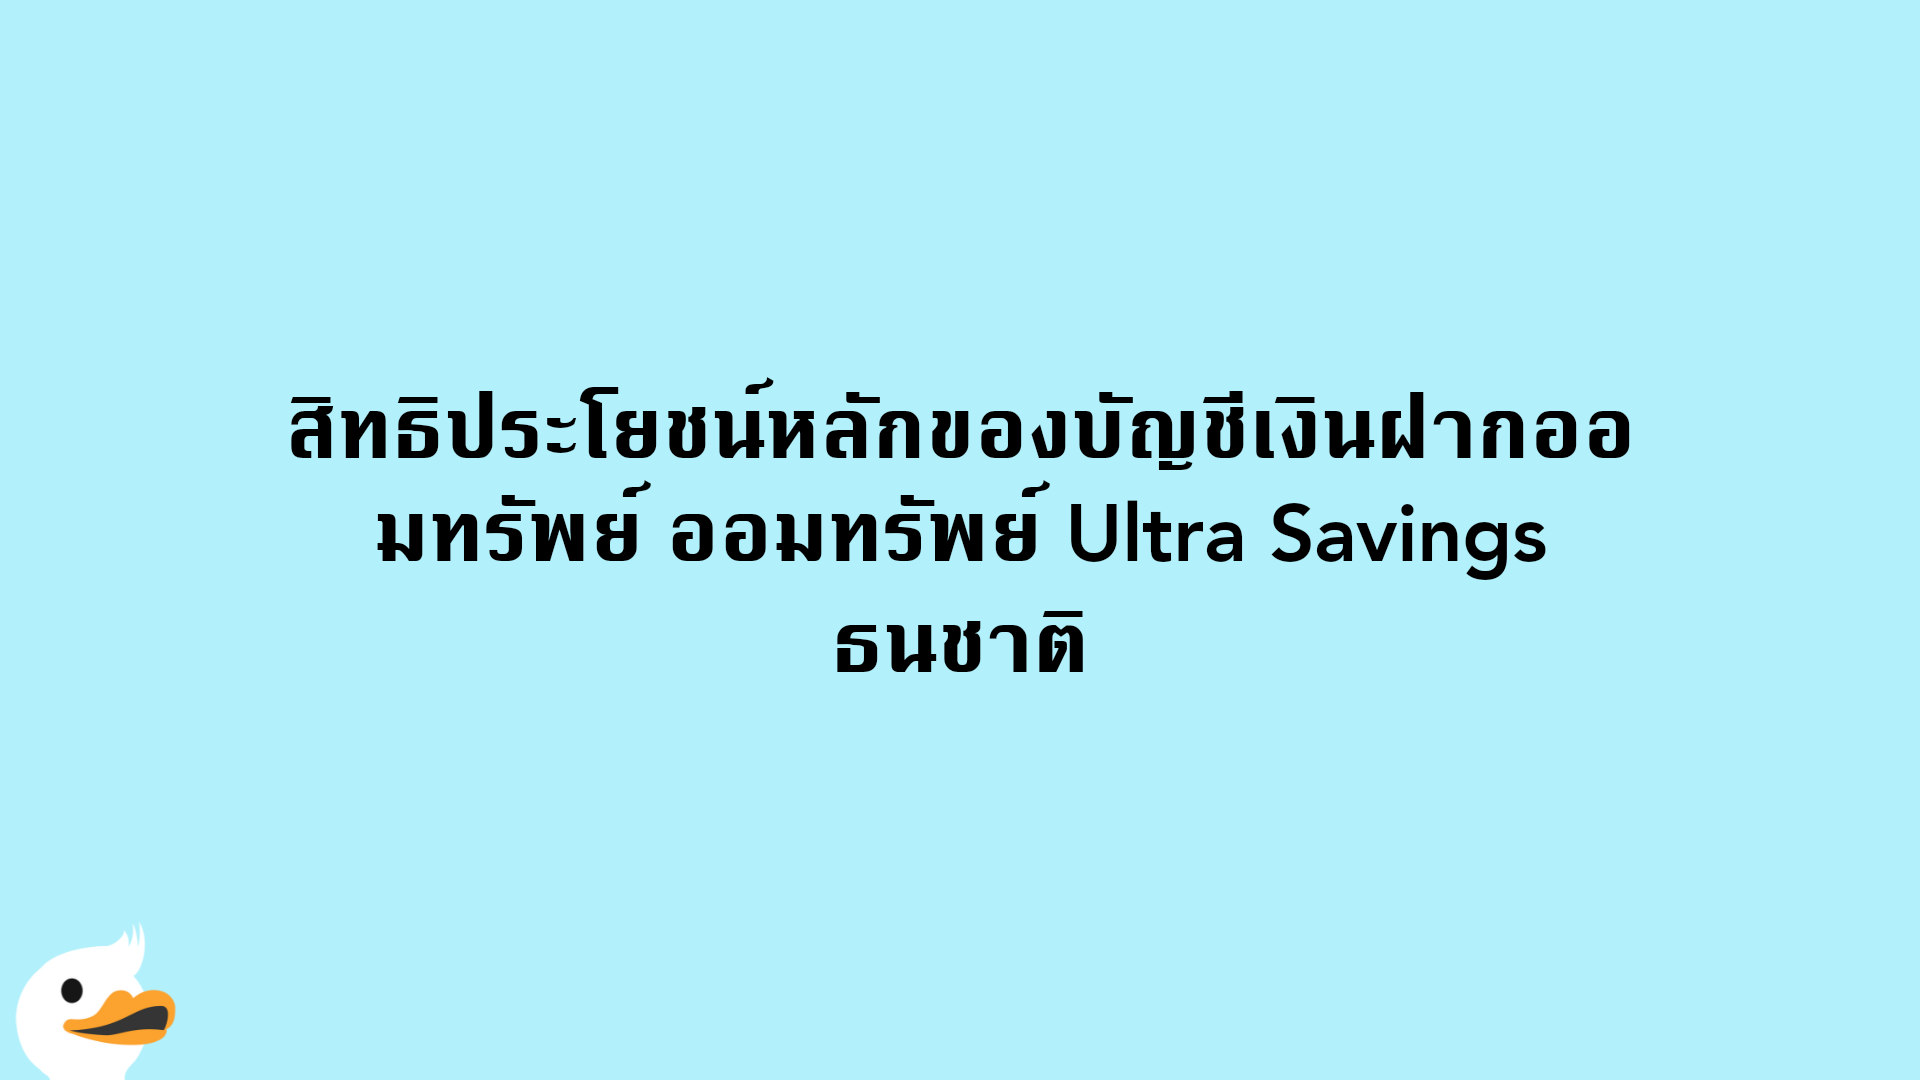 สิทธิประโยชน์หลักของบัญชีเงินฝากออมทรัพย์ ออมทรัพย์ Ultra Savings ธนชาติ